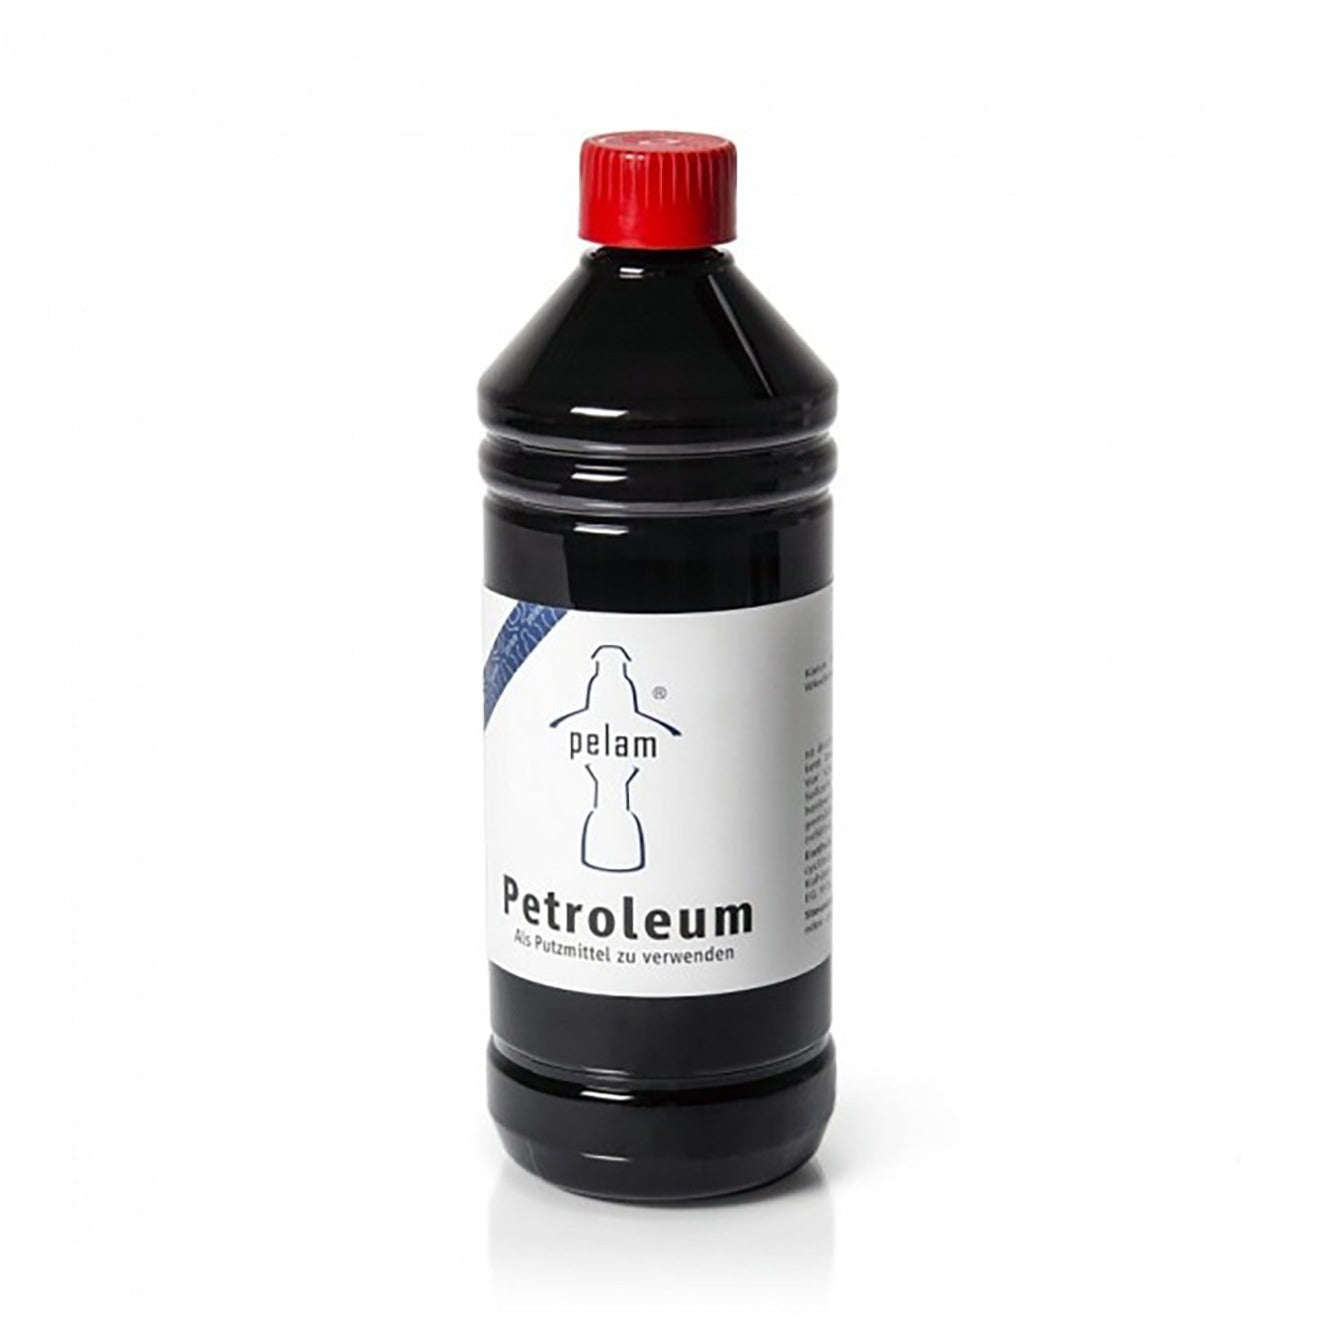 Feuerhand - Pelam 1 litre Bouteille de pétrole 